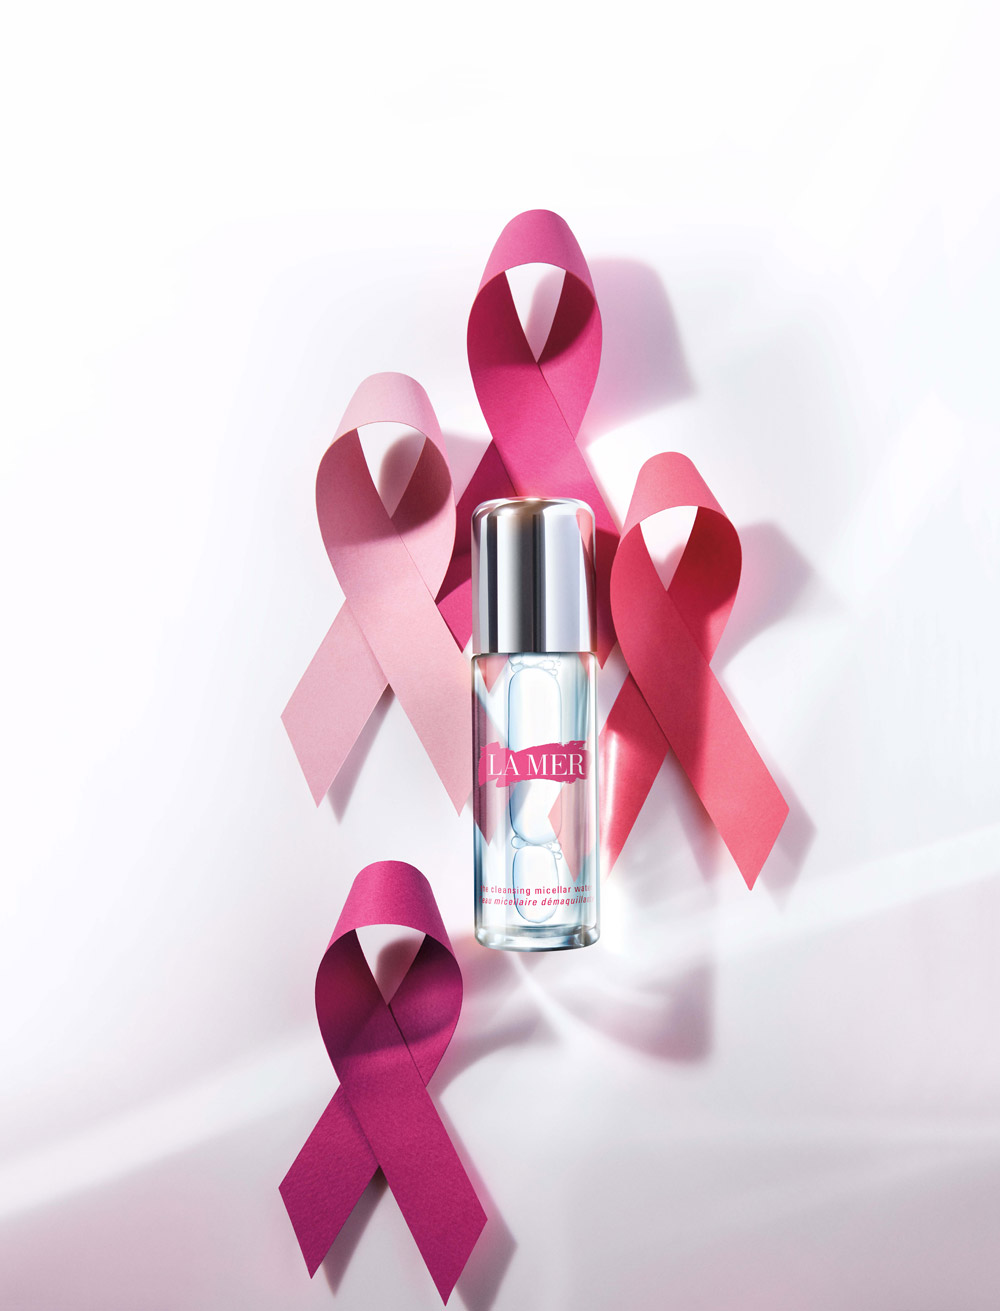 Der Brustkrebsmonat Oktober wird wieder richtig: pink – und auf sonrisa gibt es jetzt schon die schönsten Charity-Highlights, mit denen auch Du die gute Sache unterstützen kannst. 